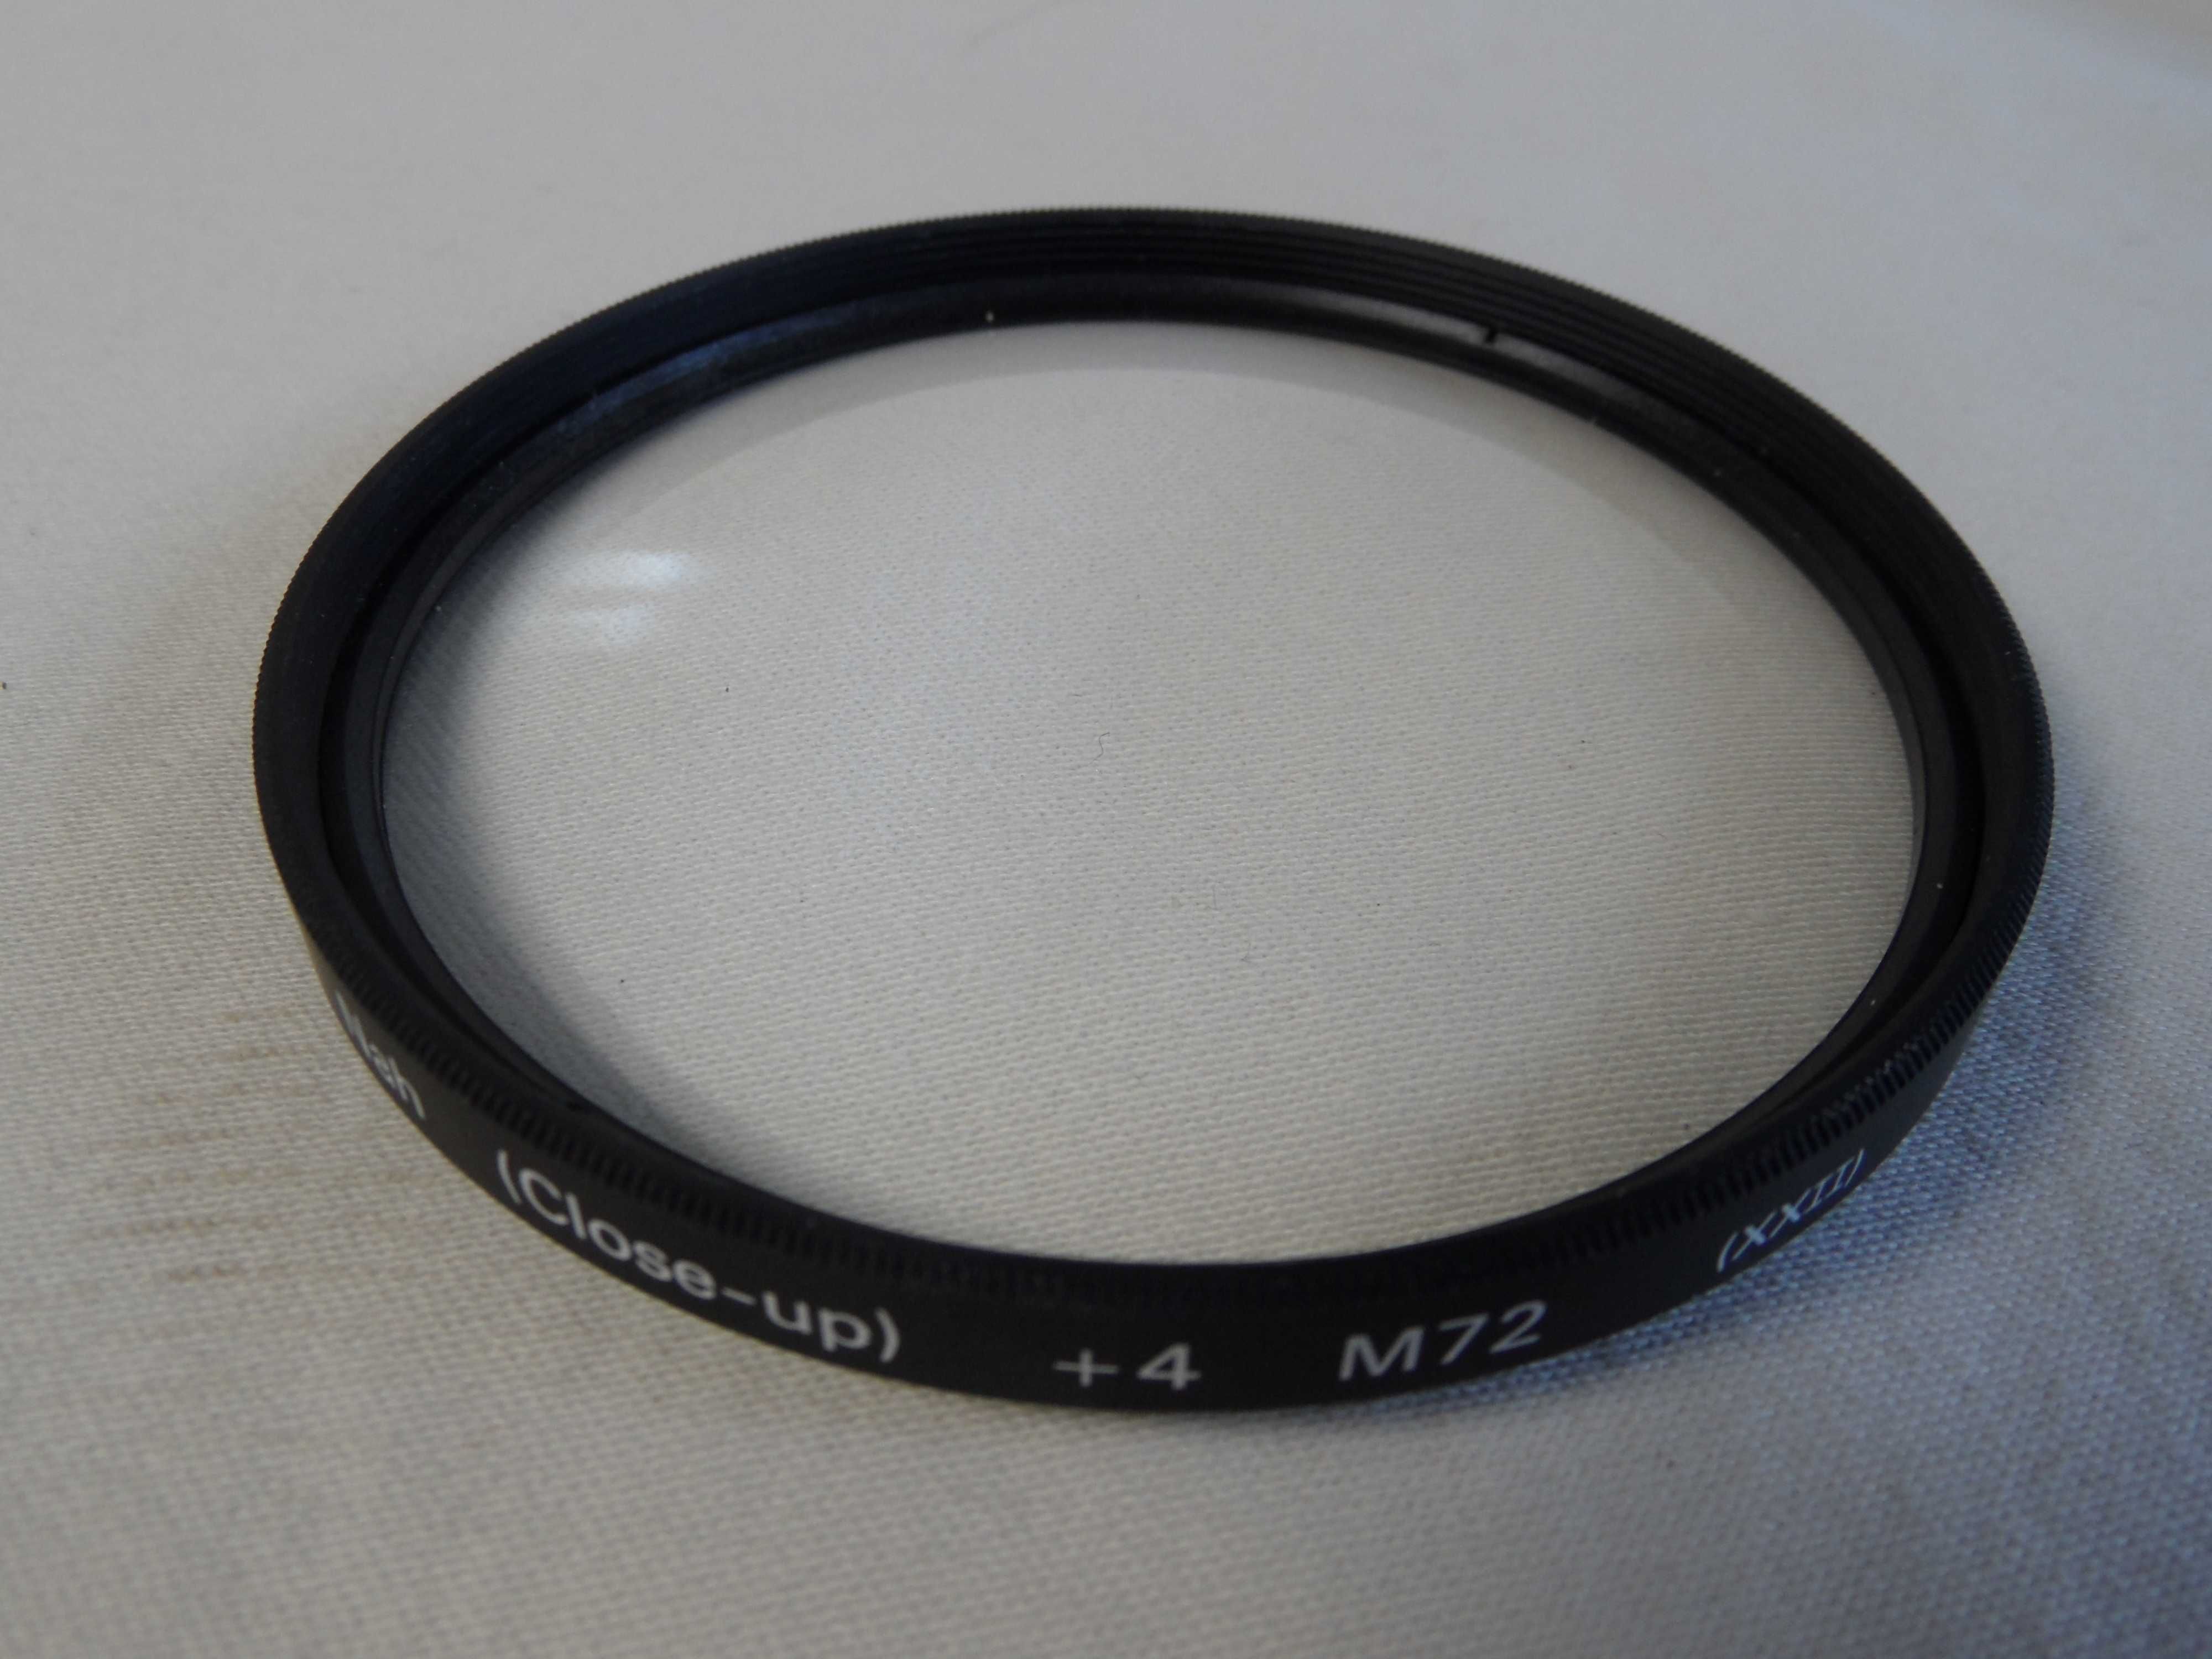 Filtr powiększający hama Nah  (Close-up) +4 M72 (XXII)